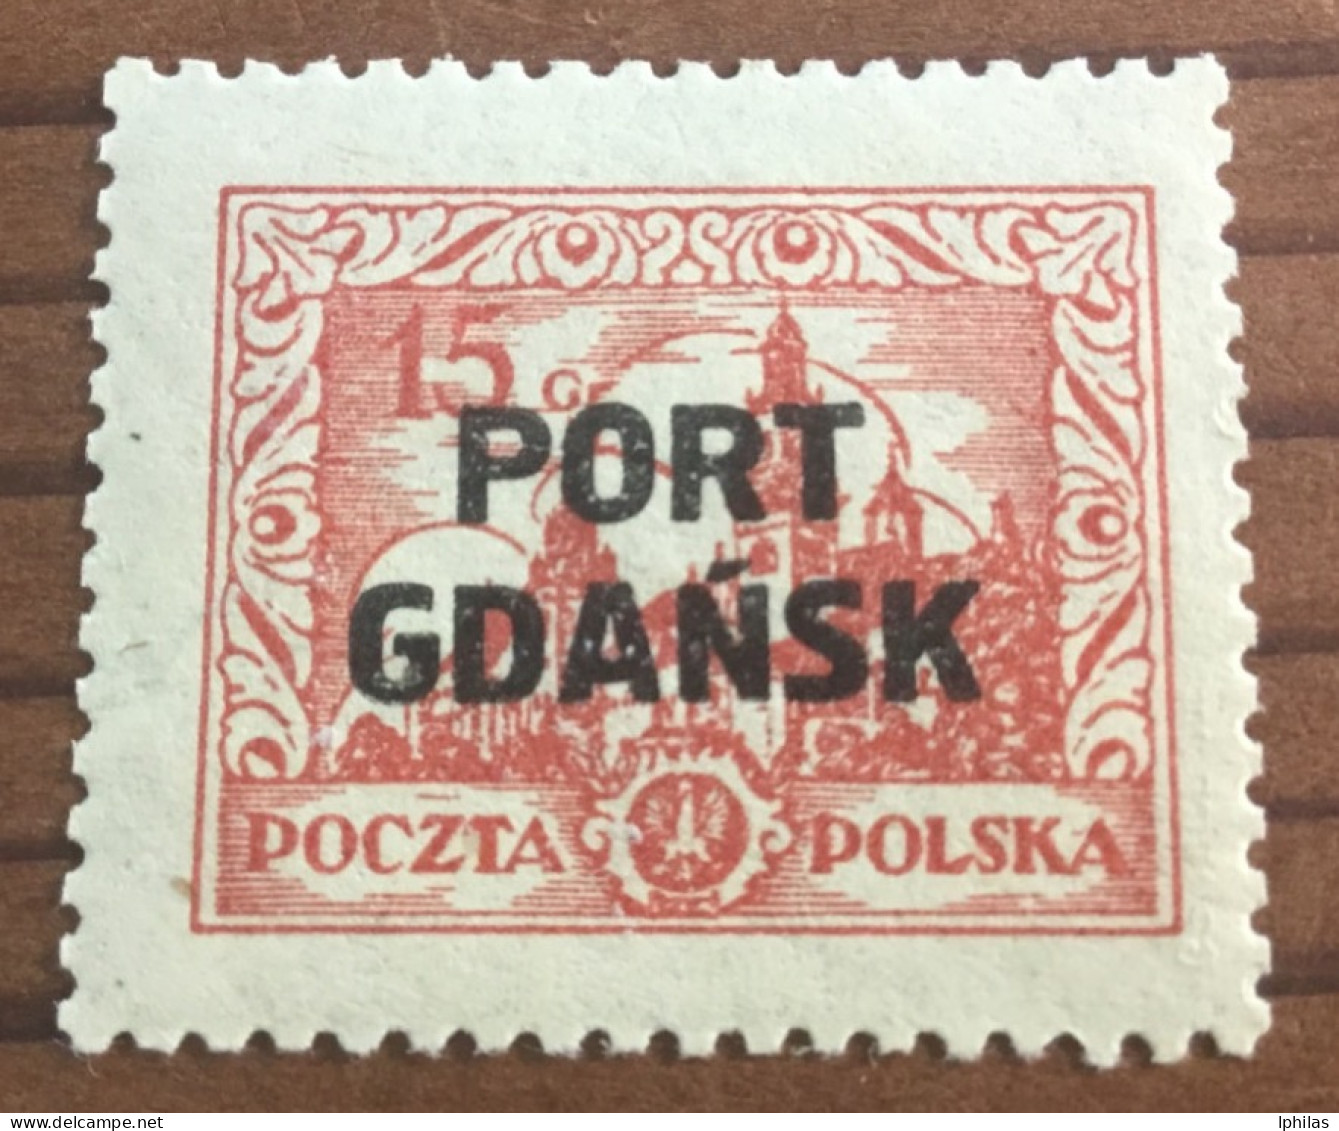 Polen Port Gdansk Geprüft 1926 MH* - Port Gdansk